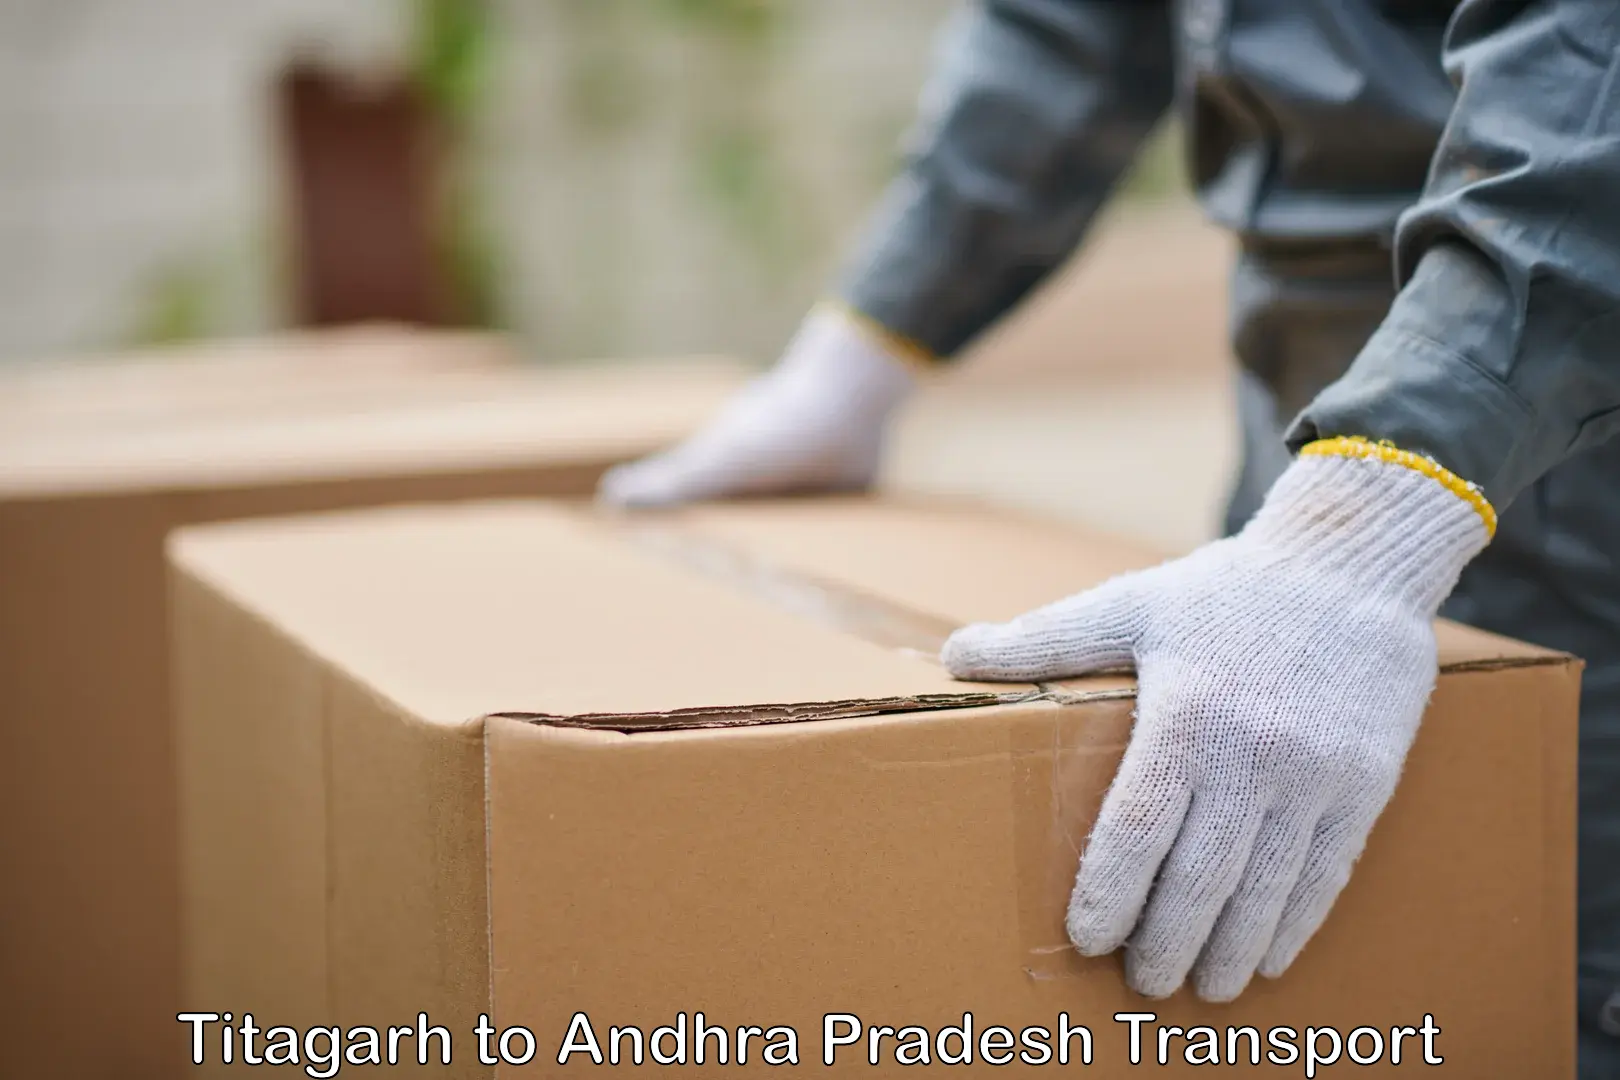 Nearby transport service Titagarh to Andhra Pradesh